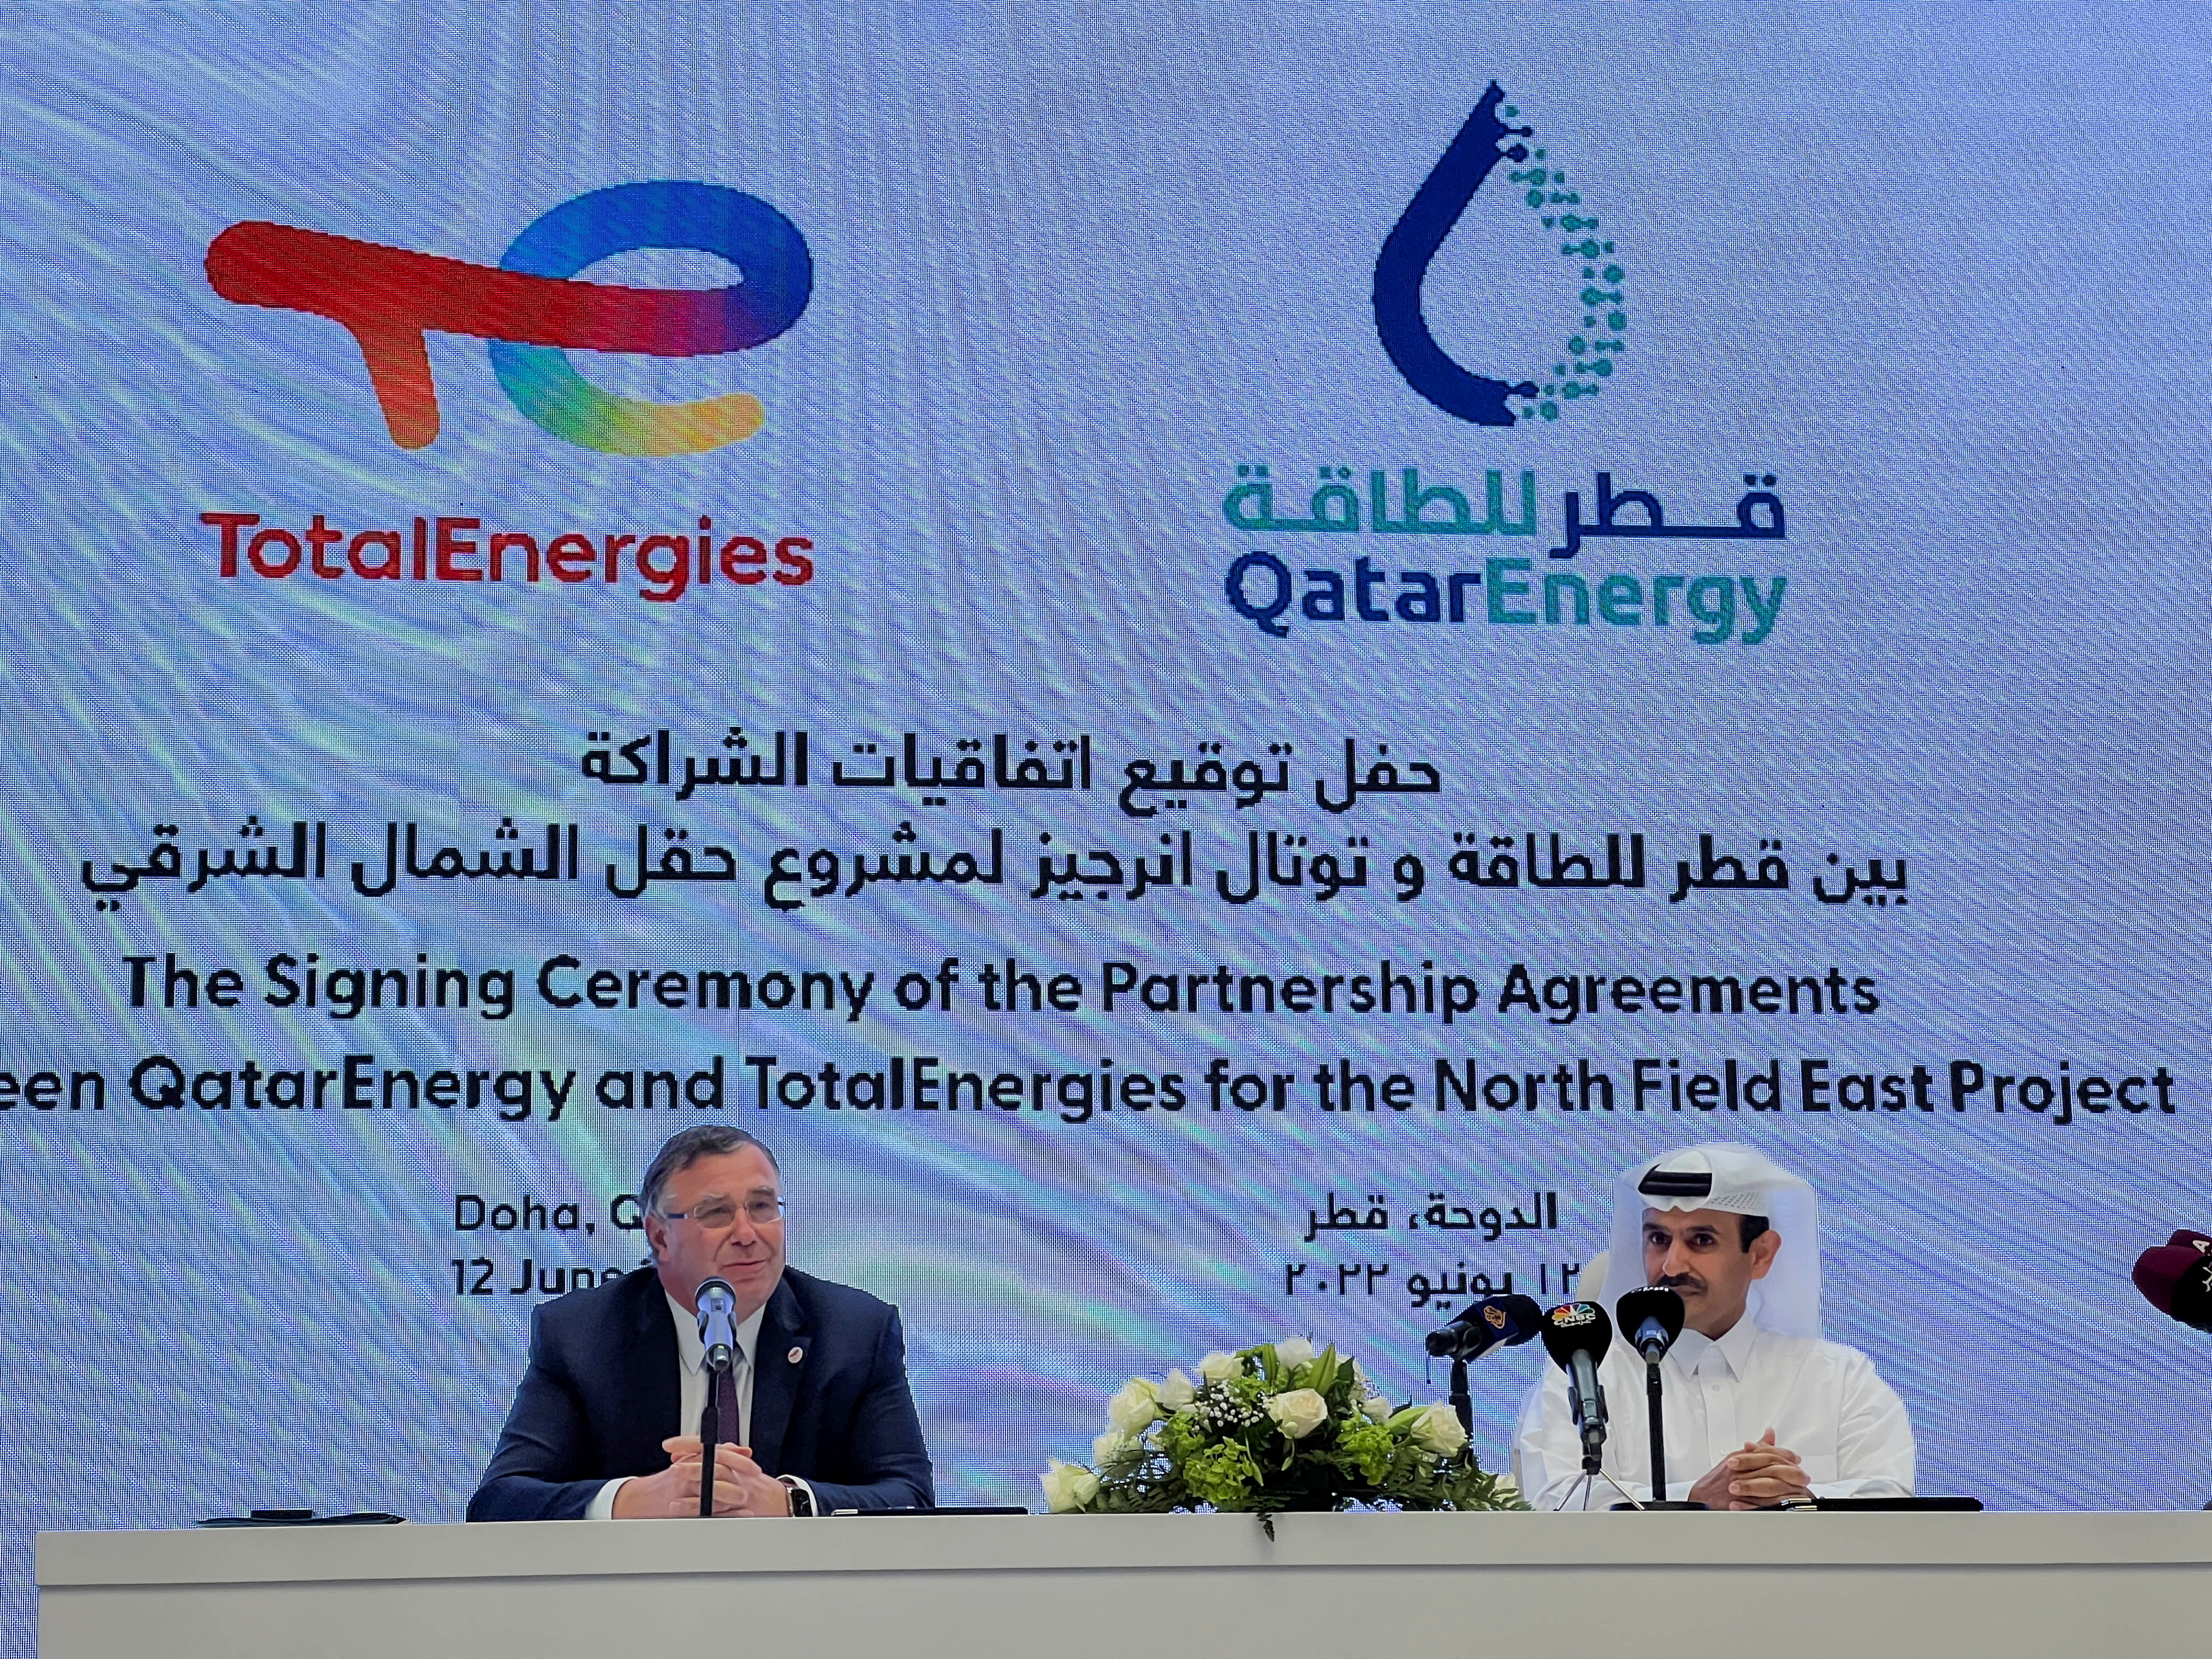 Le Qatar signe avec TotalEnergies pour bâtir le plus grand champ gazier (GNL) au monde